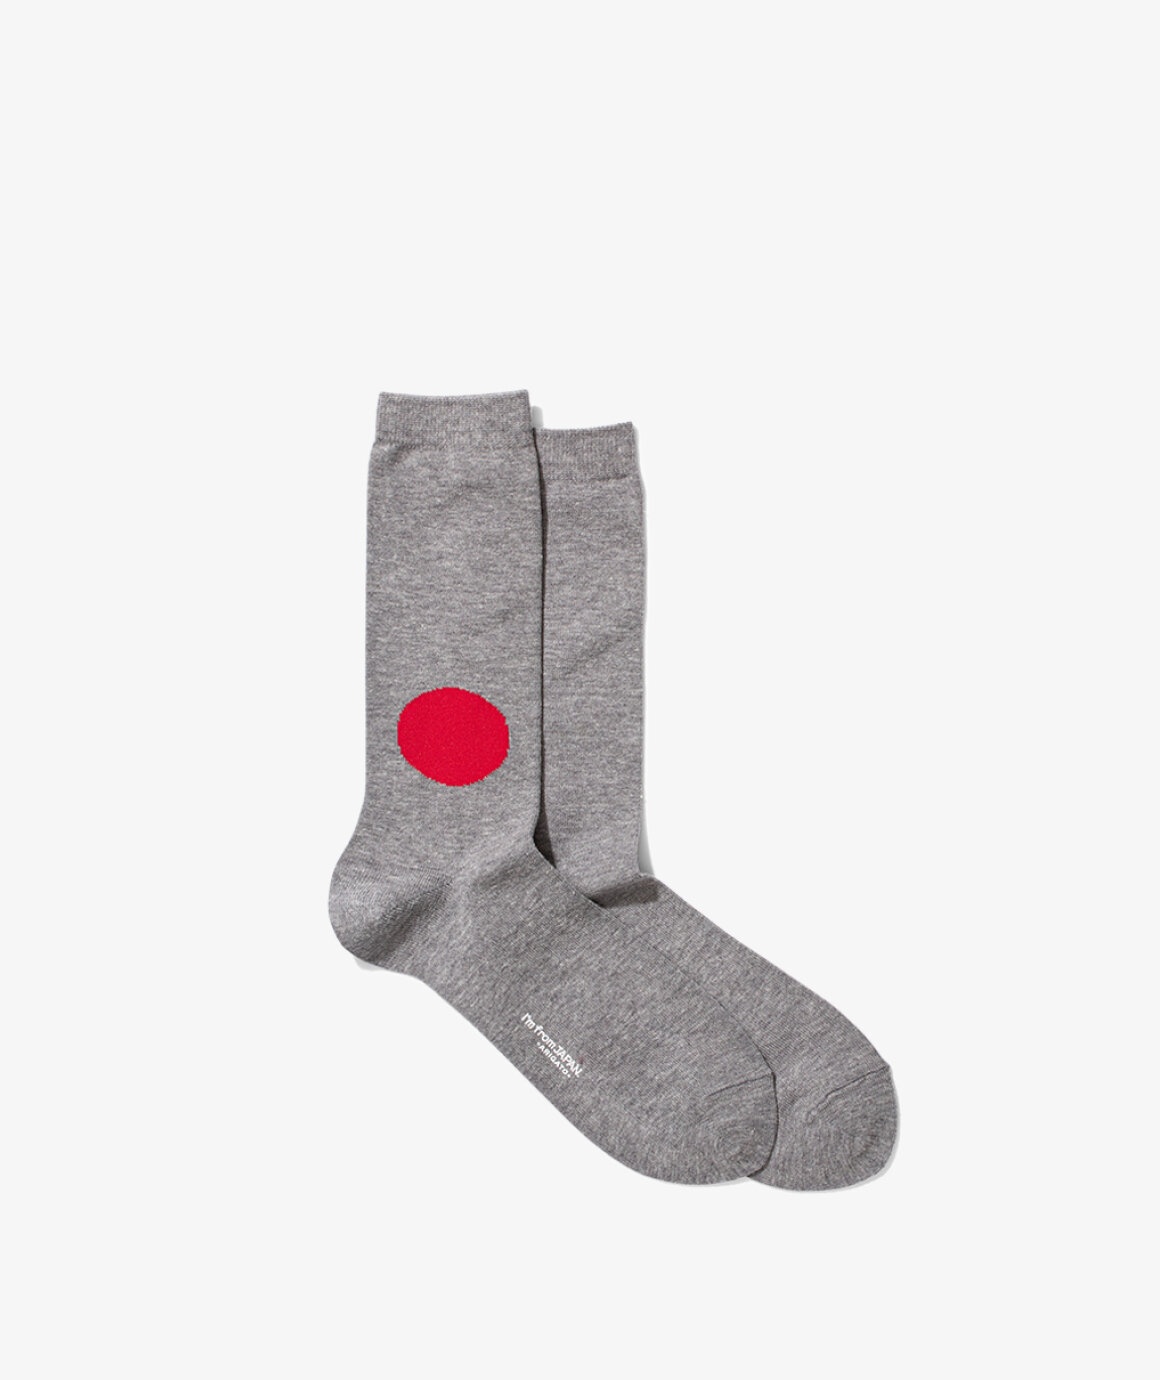 Japan Flag Socks - 1